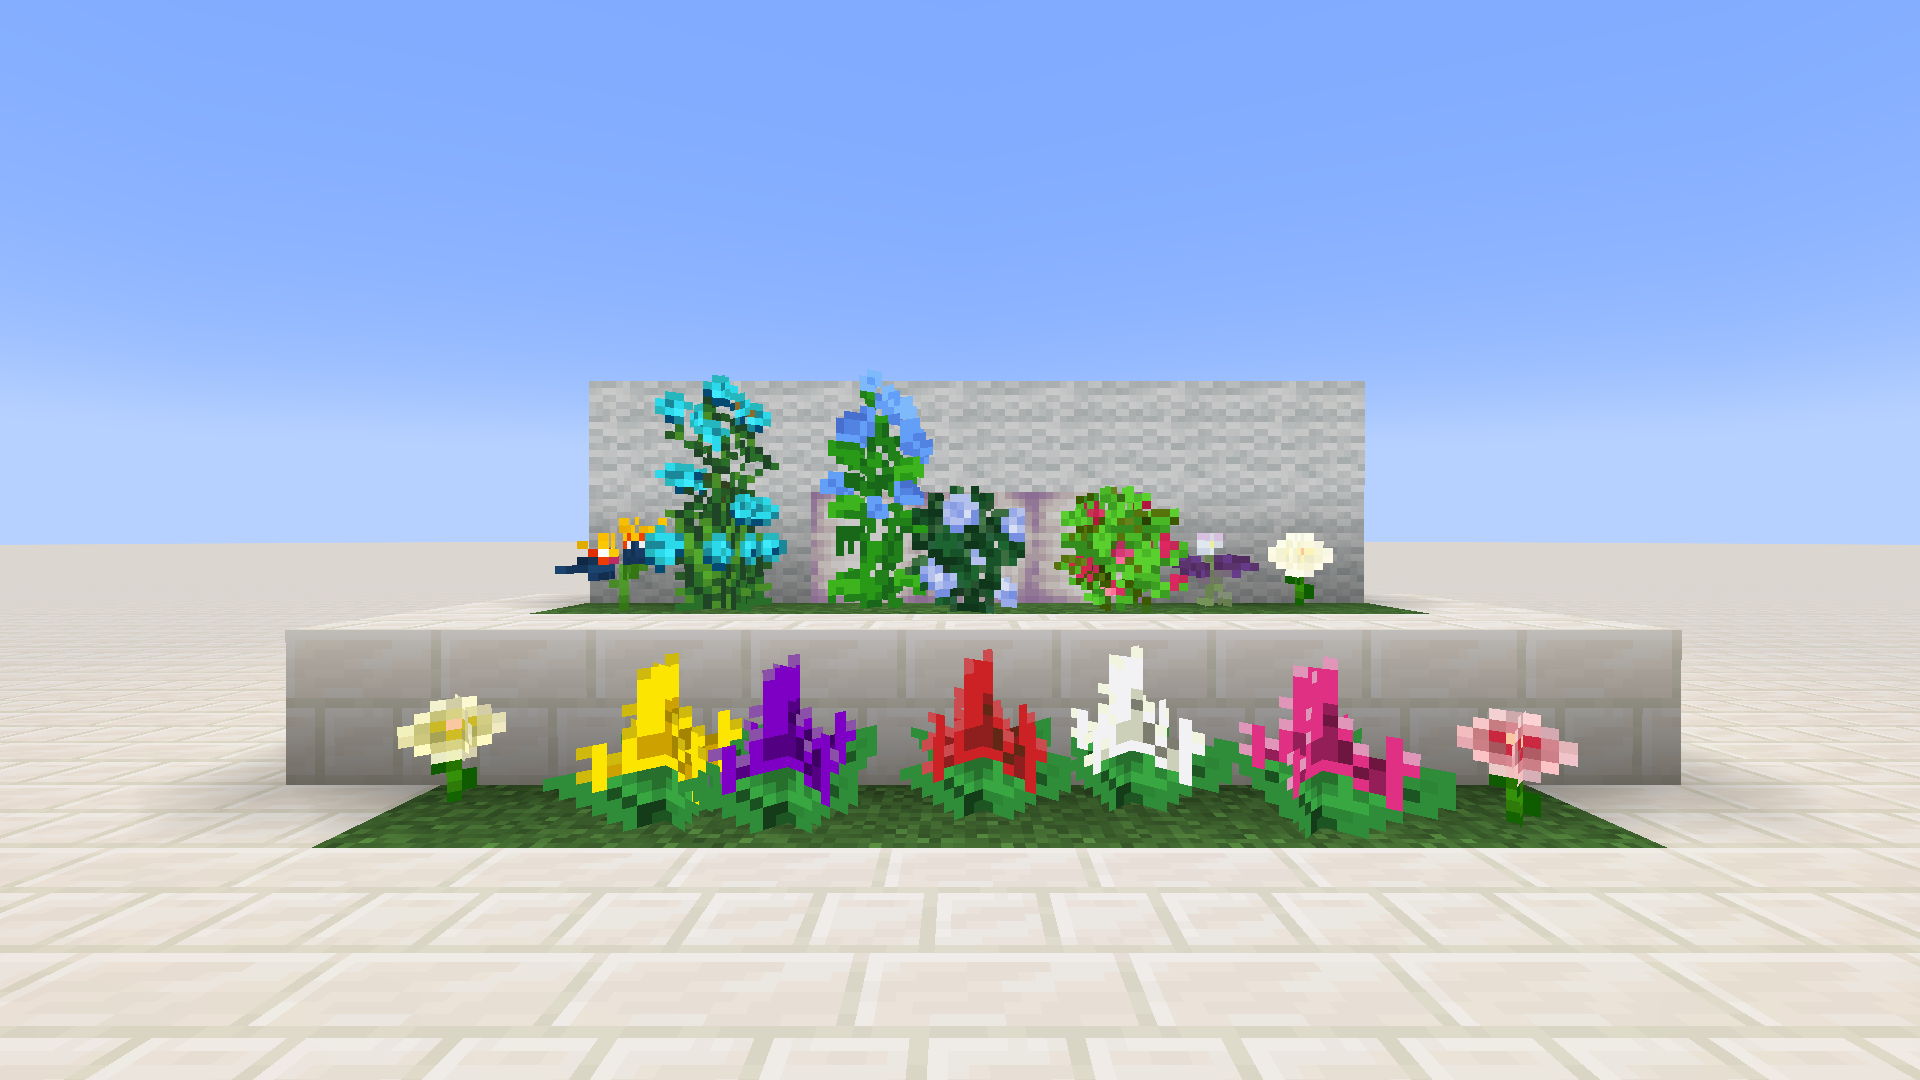 Flowers as of v1.0